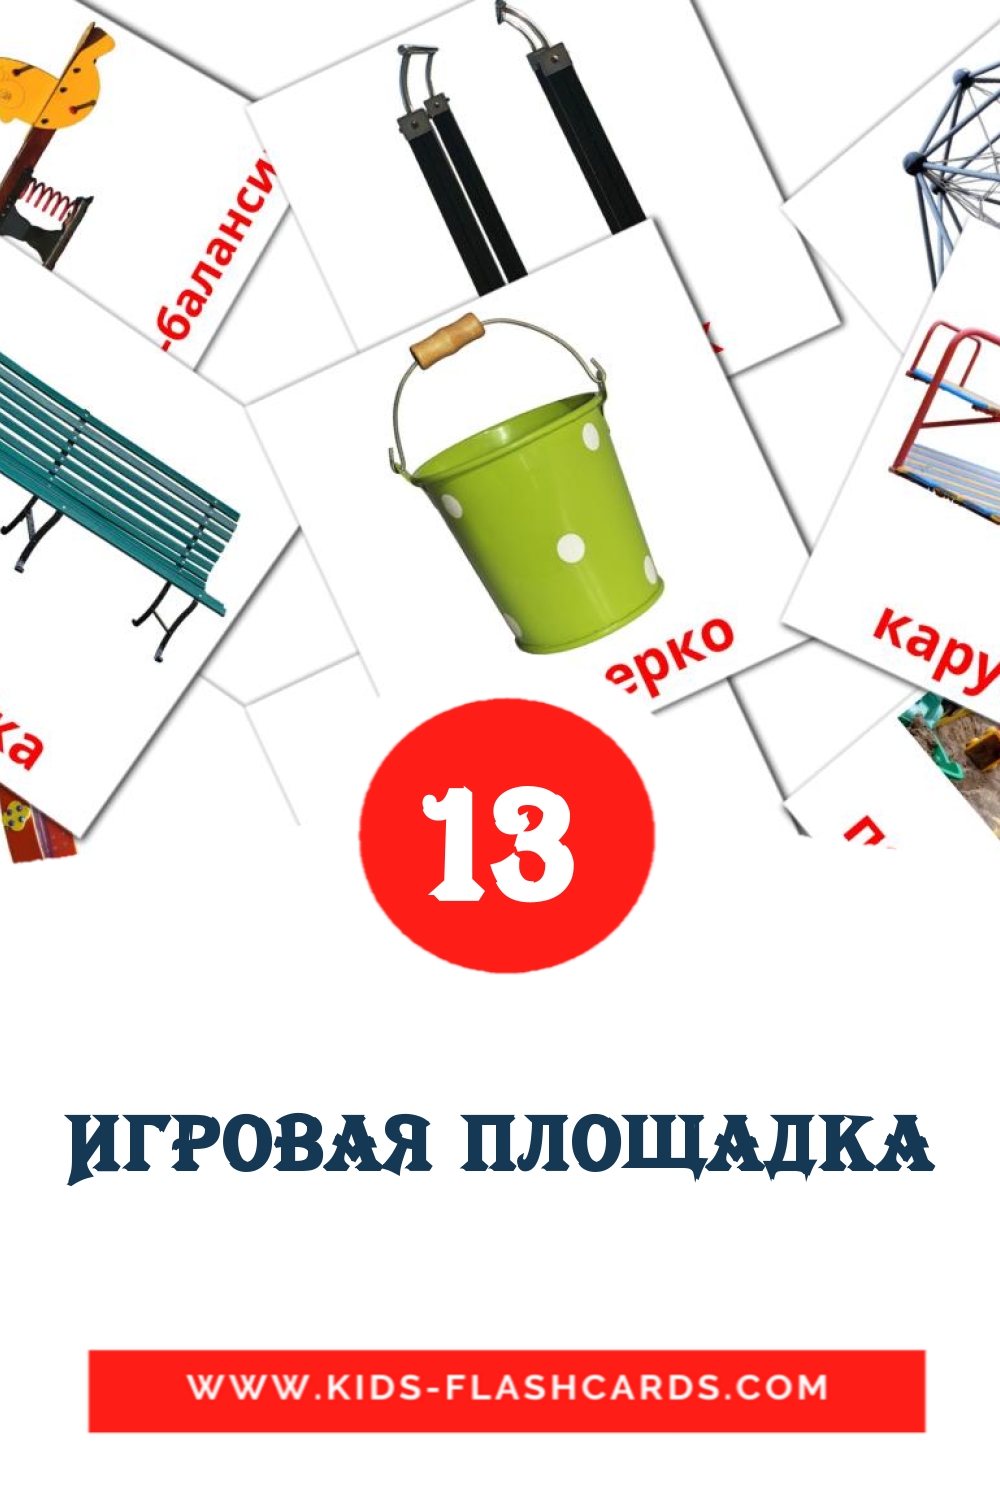 Игровая площадка на русском для Детского Сада (13 карточек)